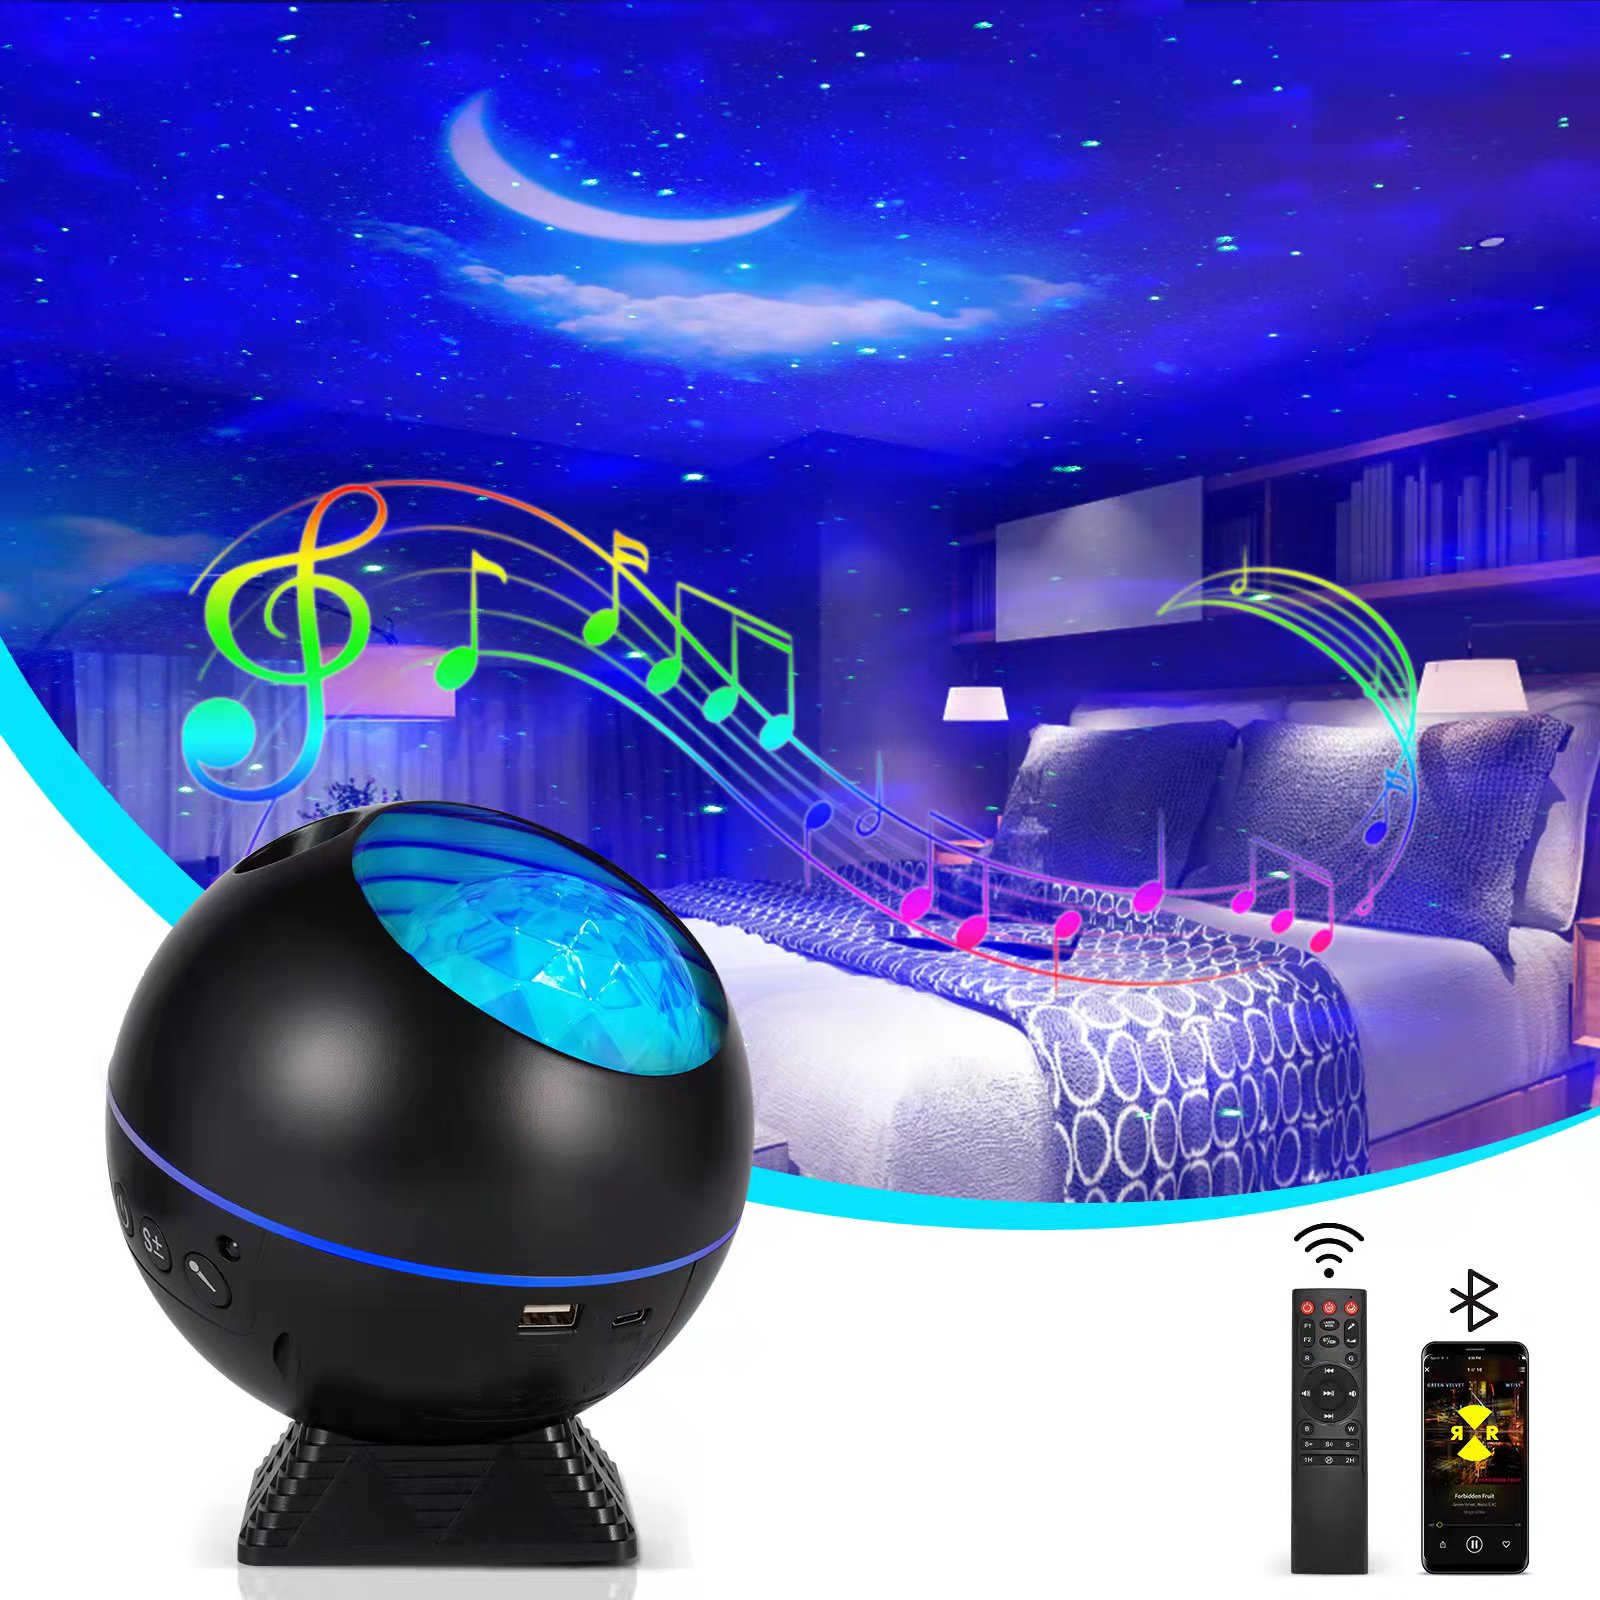 Sternenprojektor,Galaxy-Projektor-Nachtlicht Eingebauter Stereo-Bluetooth-Lautsprecher,LED-Nebel-Sternenhimmel-Wolken-Mond-Projektor-Lampe mit Fernbedienung